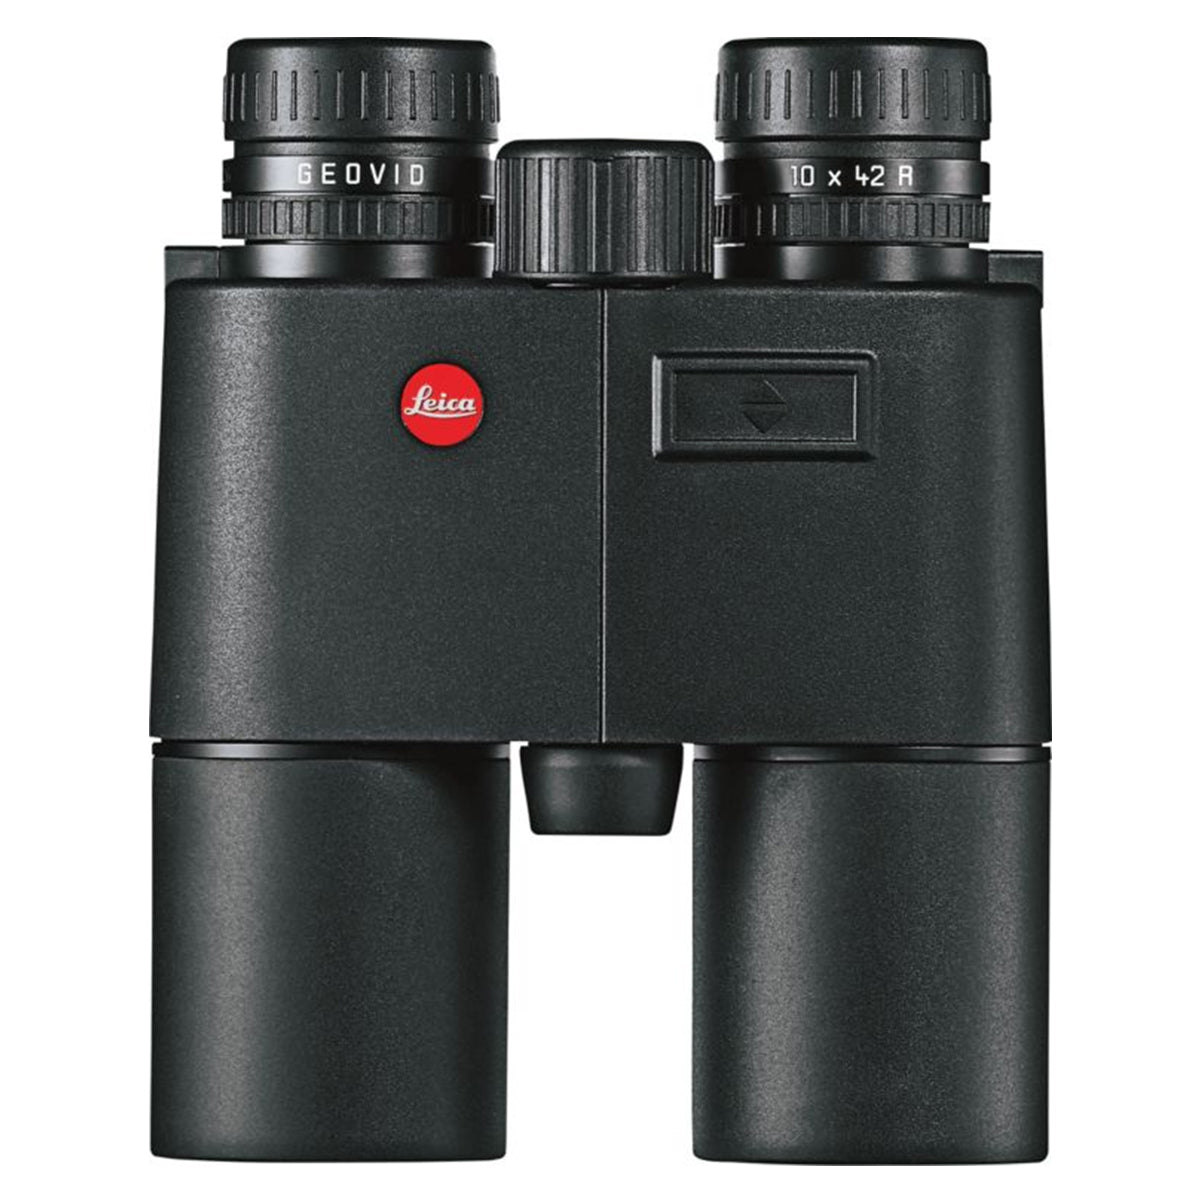 Leica Geovid 10x42 R Rangefinding Binocular by Leica | Optics - goHUNT Shop